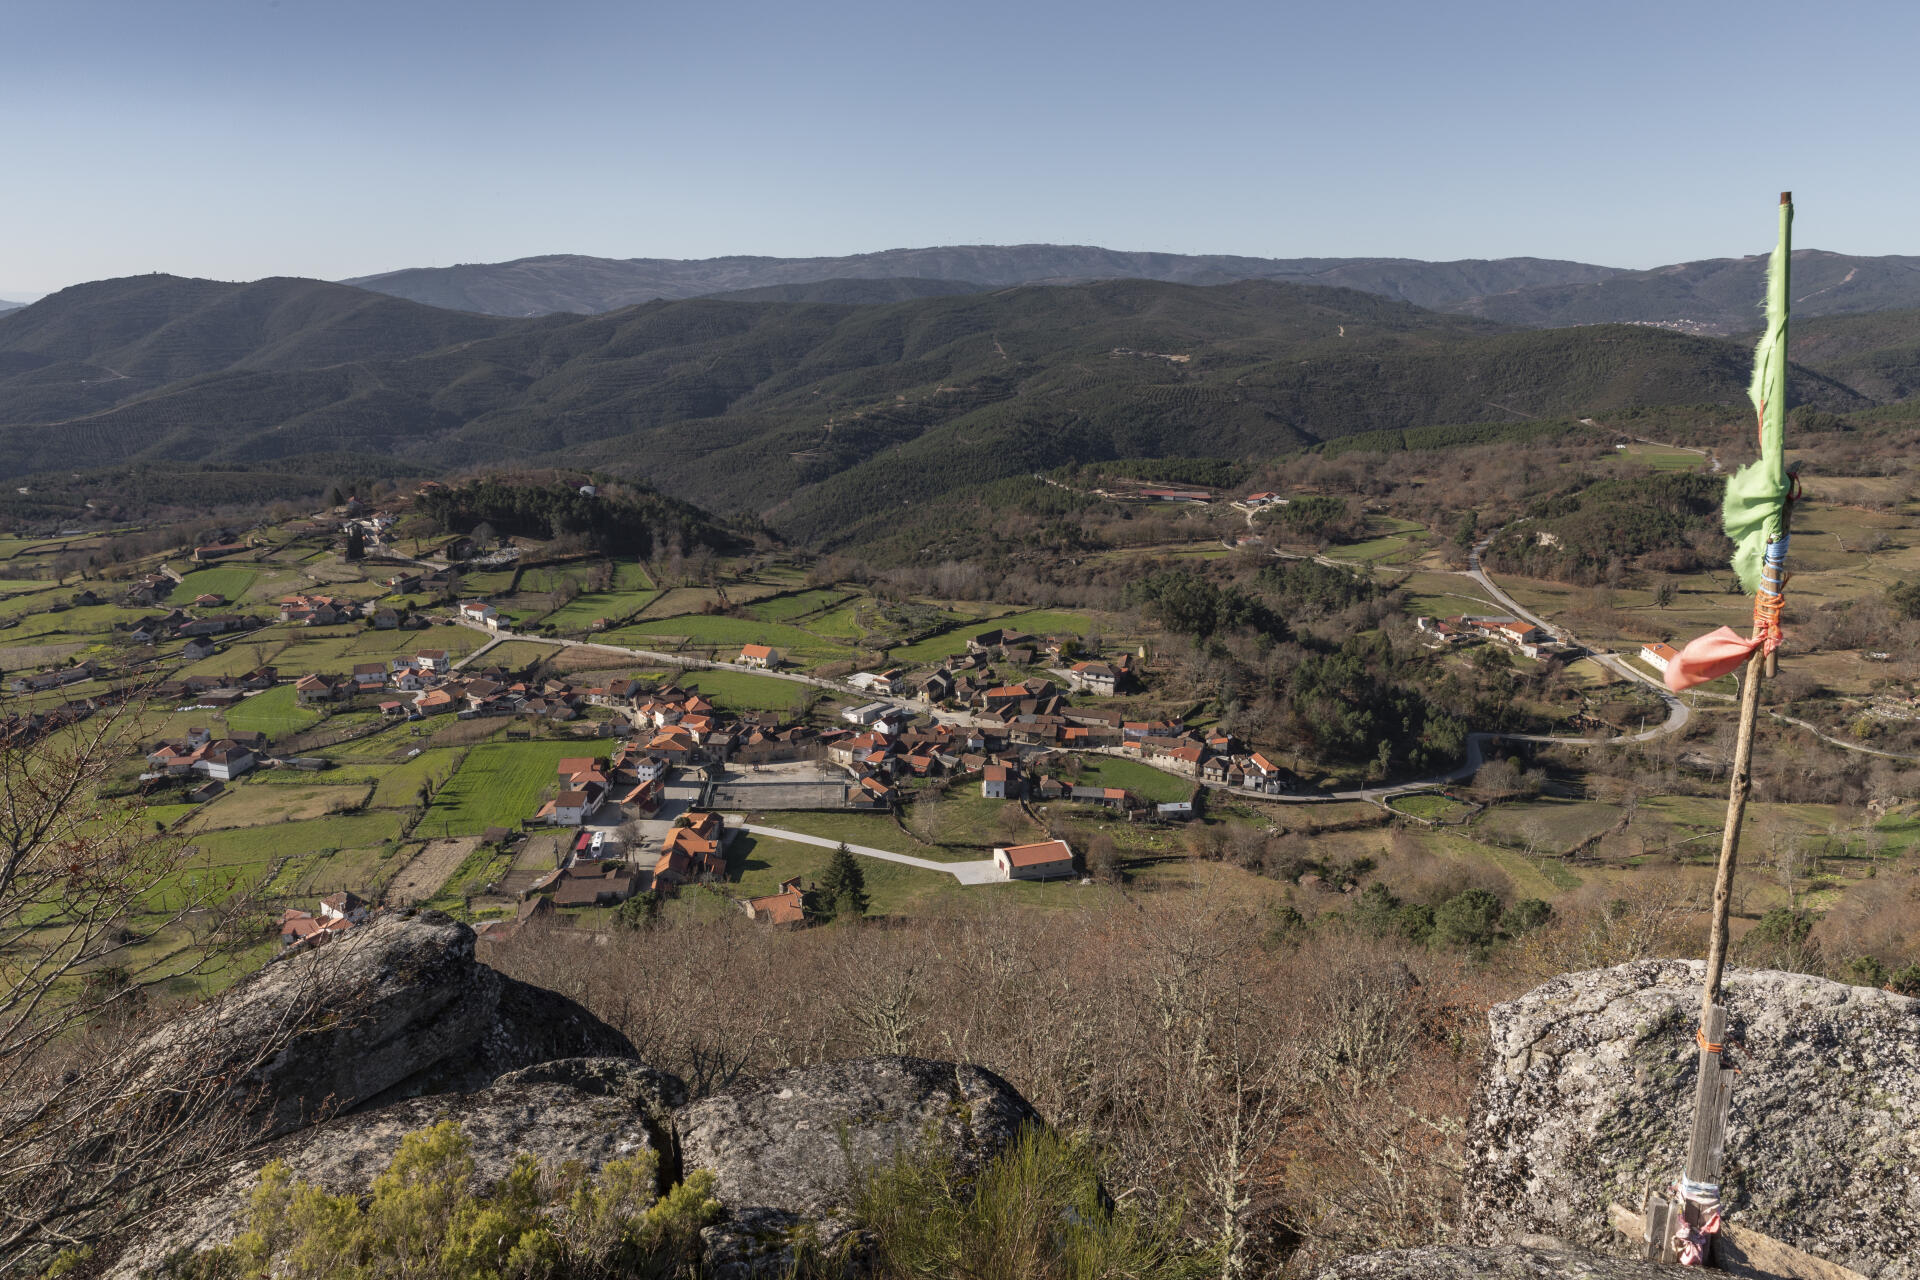 Vue de Covas do Barroso, le 22 janvier 2022. En arrière-plan, il est possible de voir les collines voisines qui ont fait l’objet de forages exploratoires.